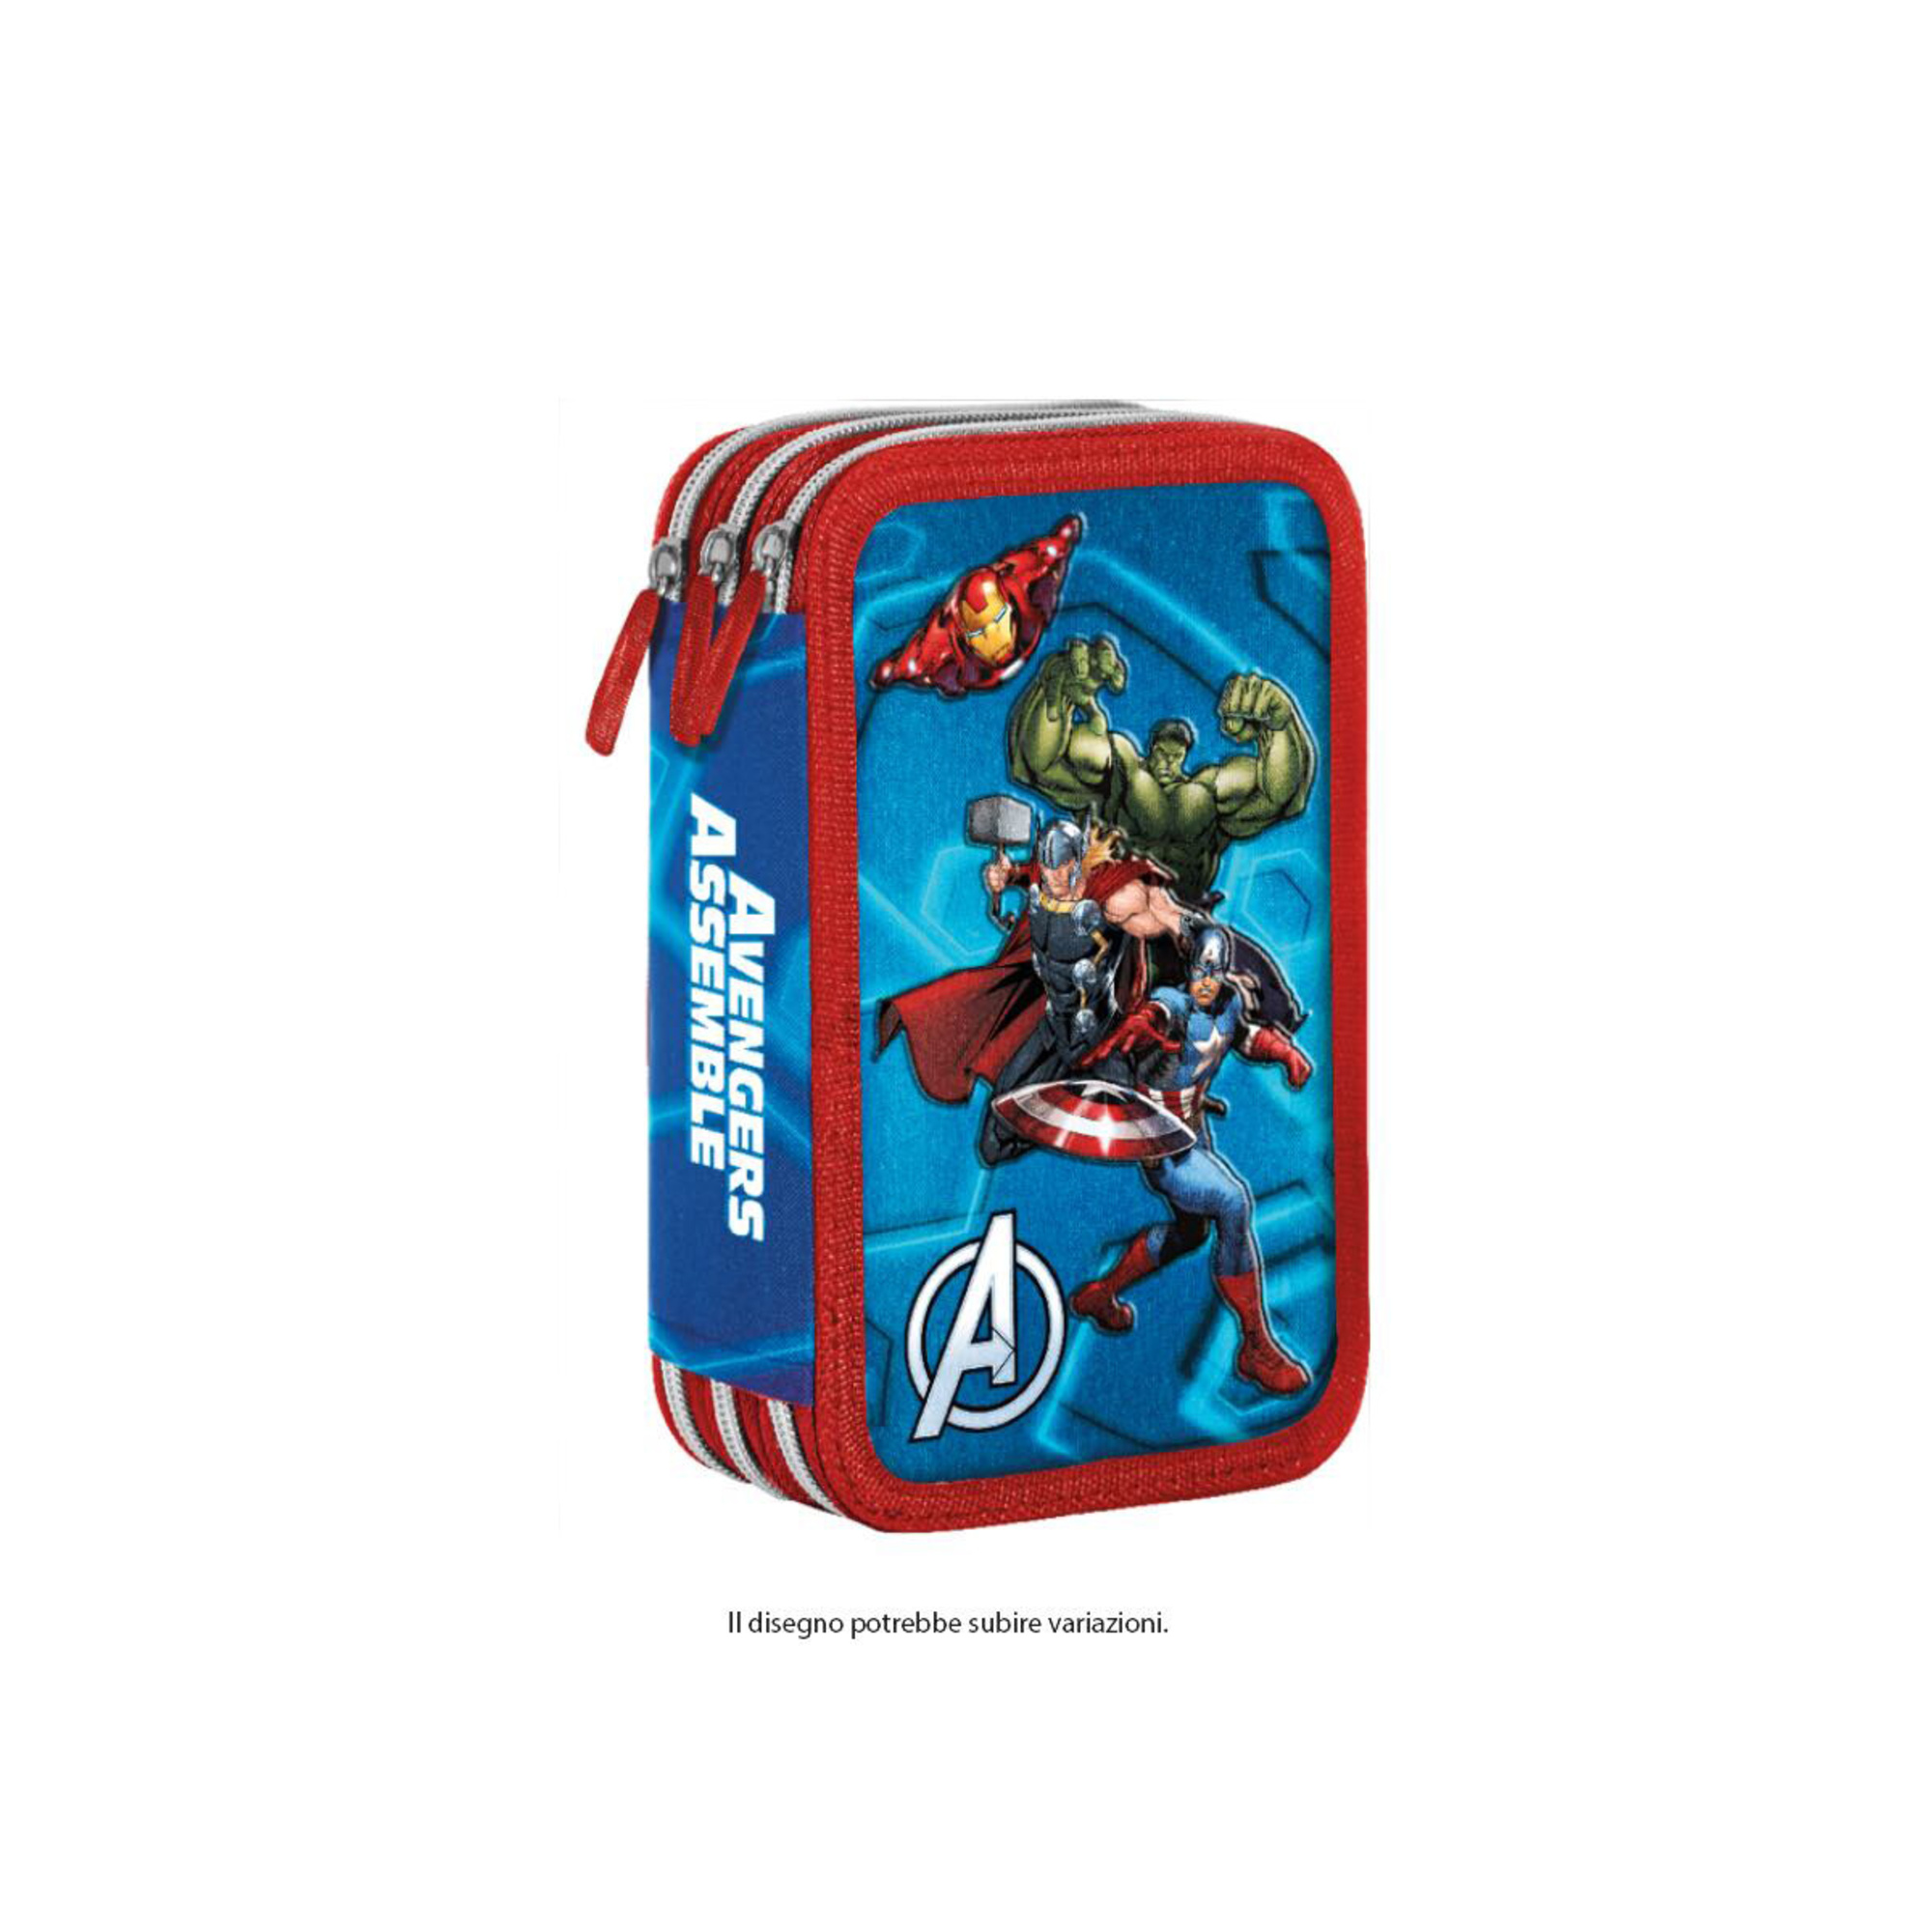 Astuccio 3 zip con l'immagine degli avengers, caricamento giotto turbocolor - Avengers